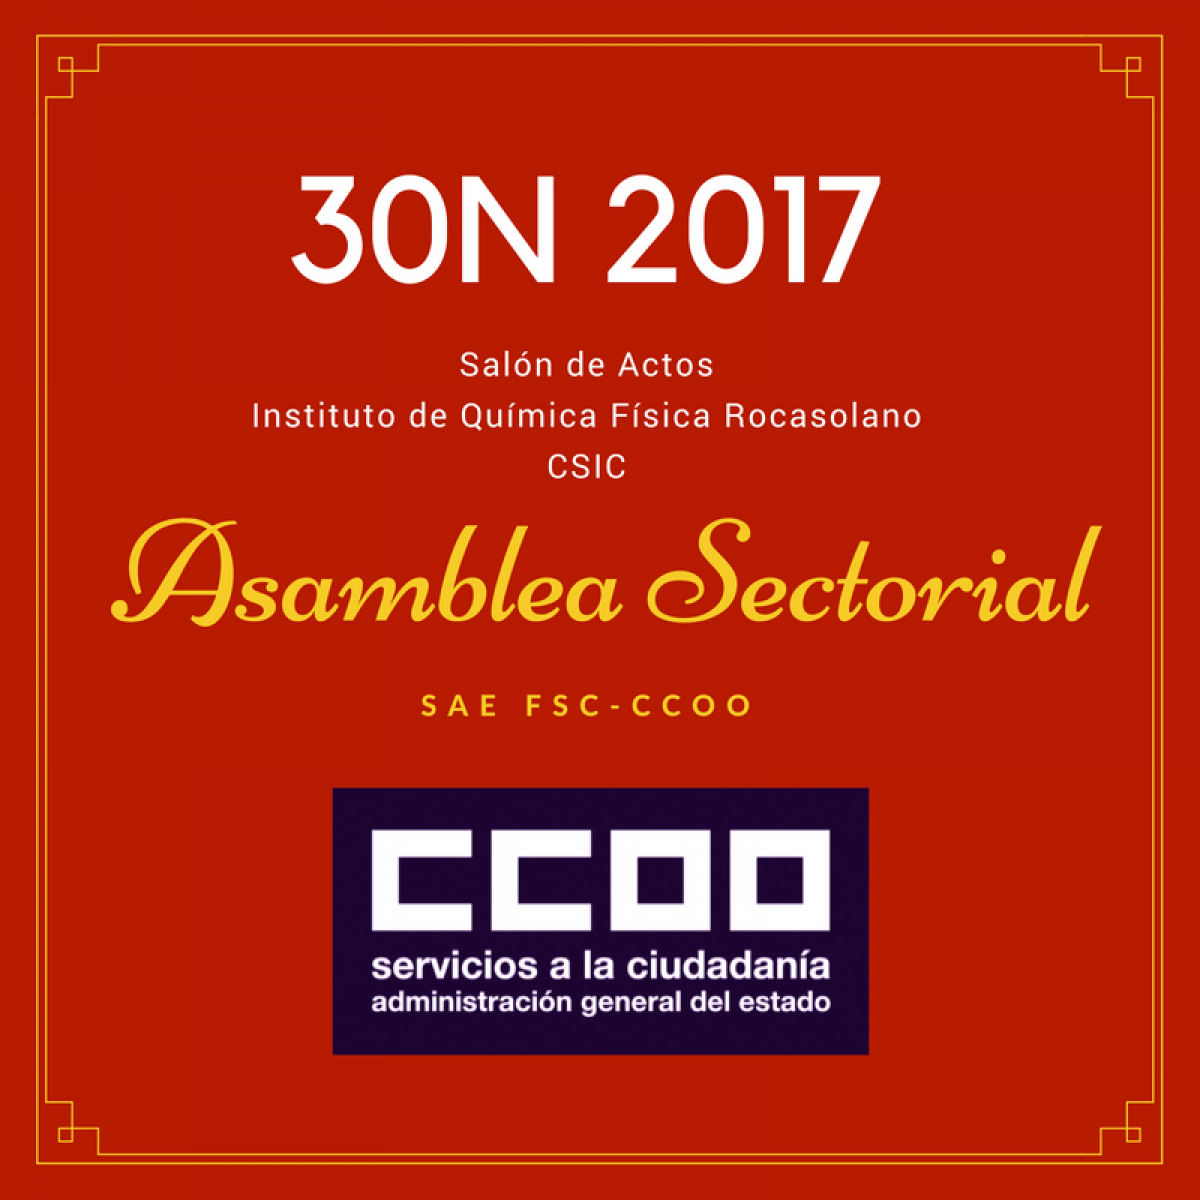 Asamblea Sectorial SAE FSC-CCOO en CSIC